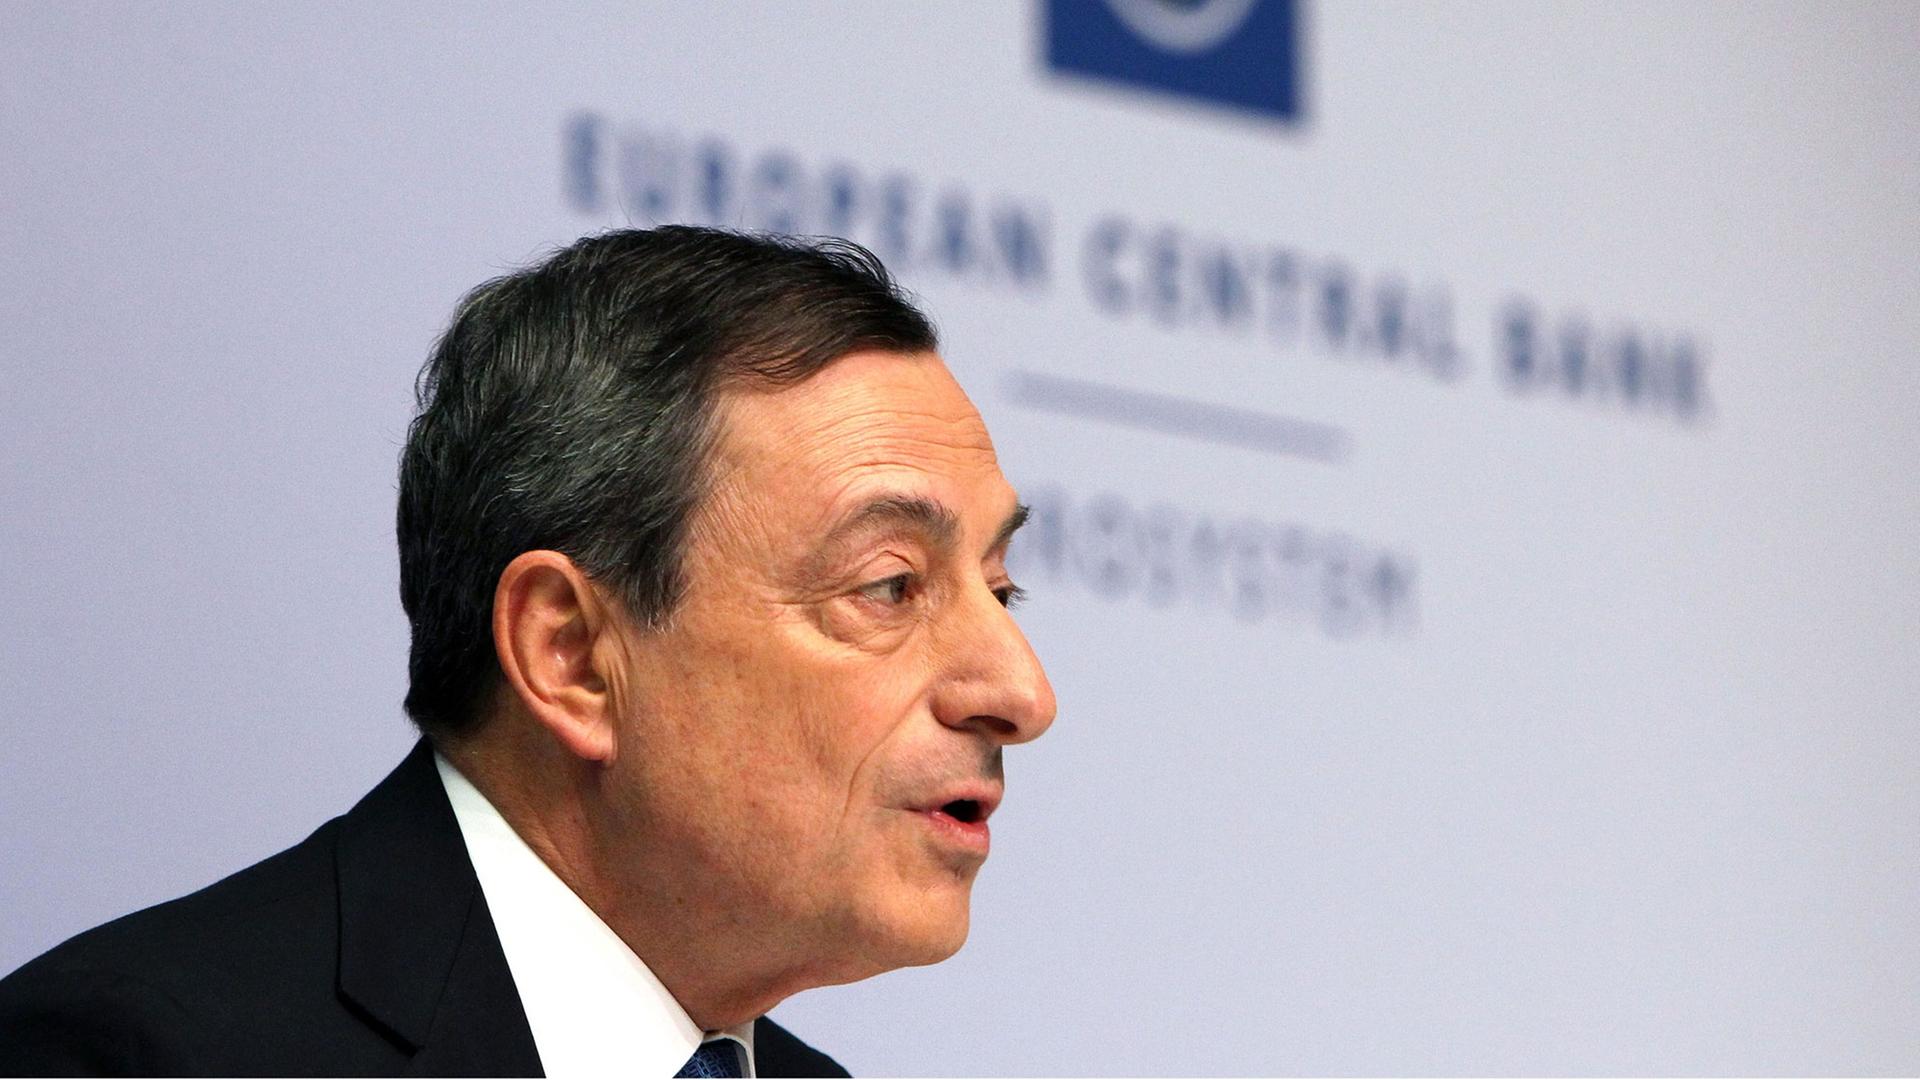 Der Präsident der Europäischen Zentralbank, Mario Draghi, spricht auf der Pressekonferenz der EZB in Frankfurt vor Journalisten.